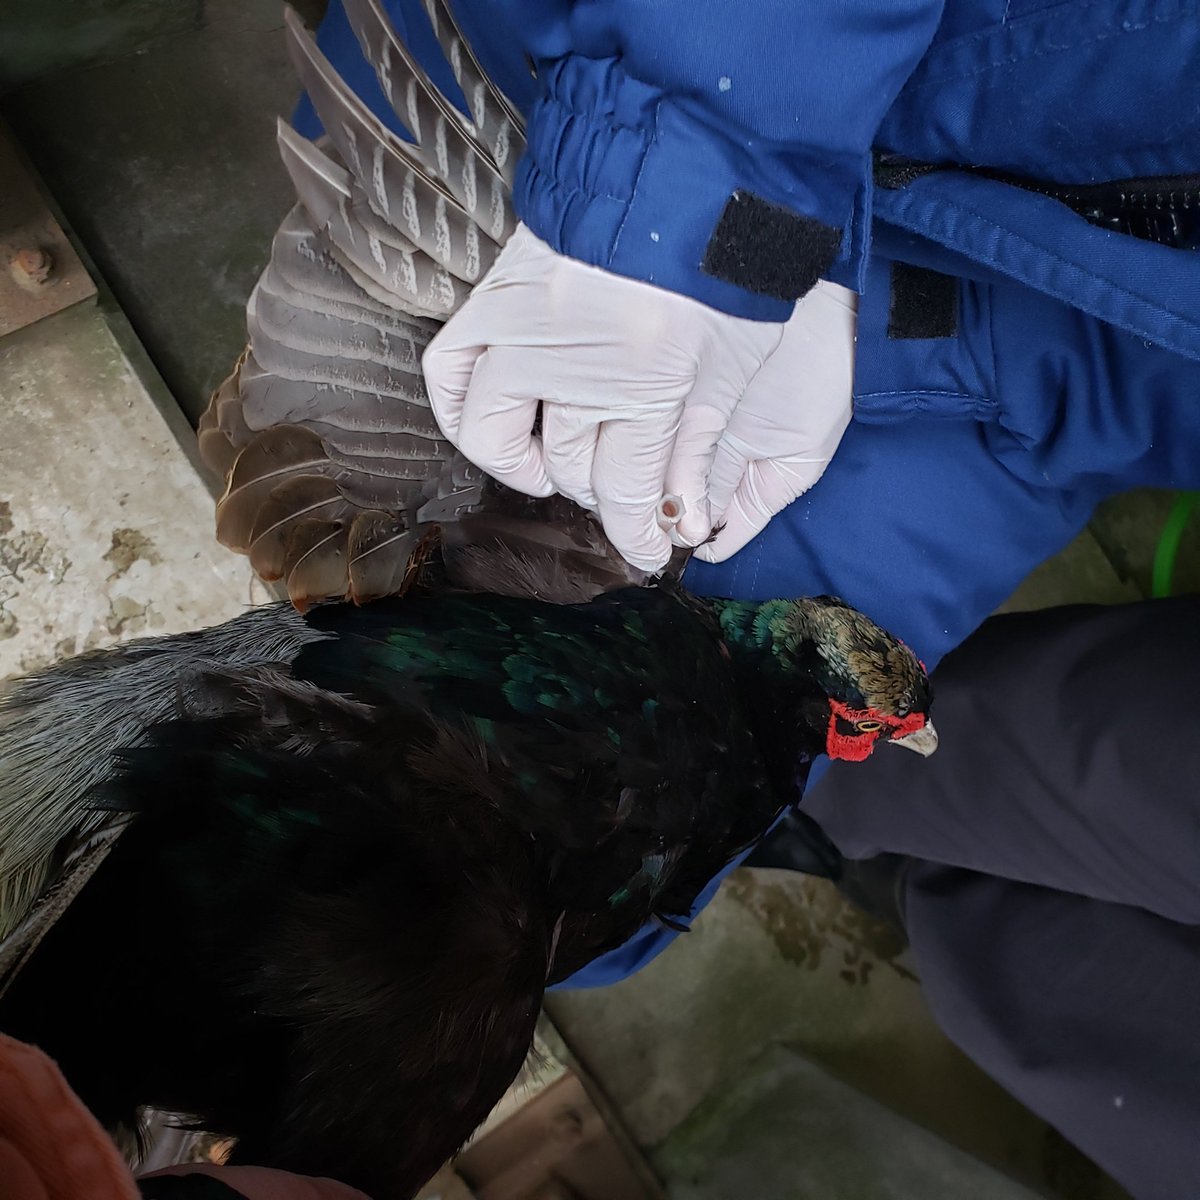 盛岡市動物公園 Zoomo Twitter પર 今日は 二ホンキジやキンケイなどキジの仲間の鳥たちに年に一度の鶏痘ワクチン接種をしました キジの 仲間特有の伝染病予防のためです